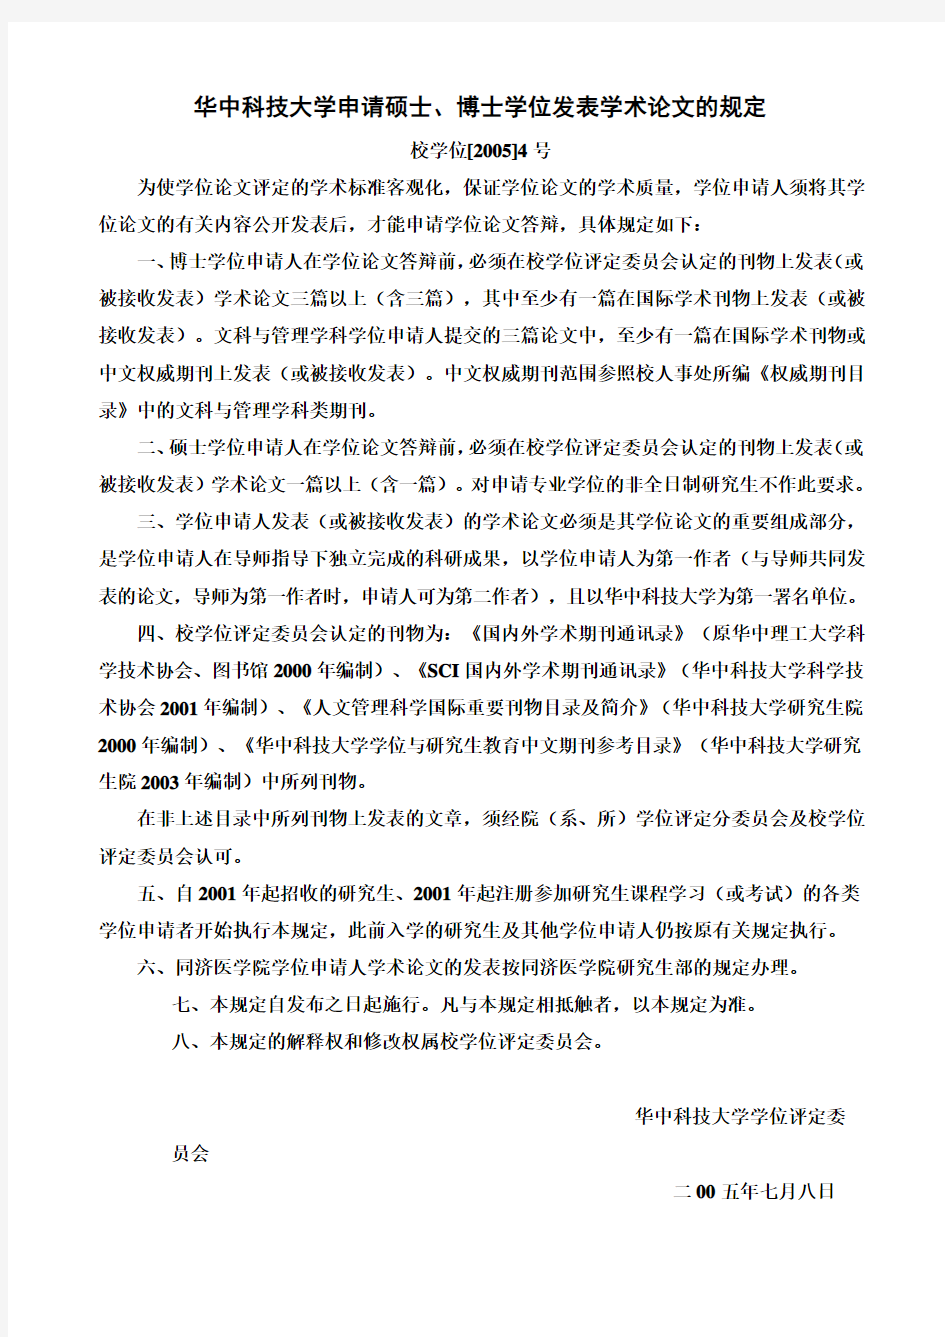 华中科技大学申请硕士、博士学位发表学术论文的规定